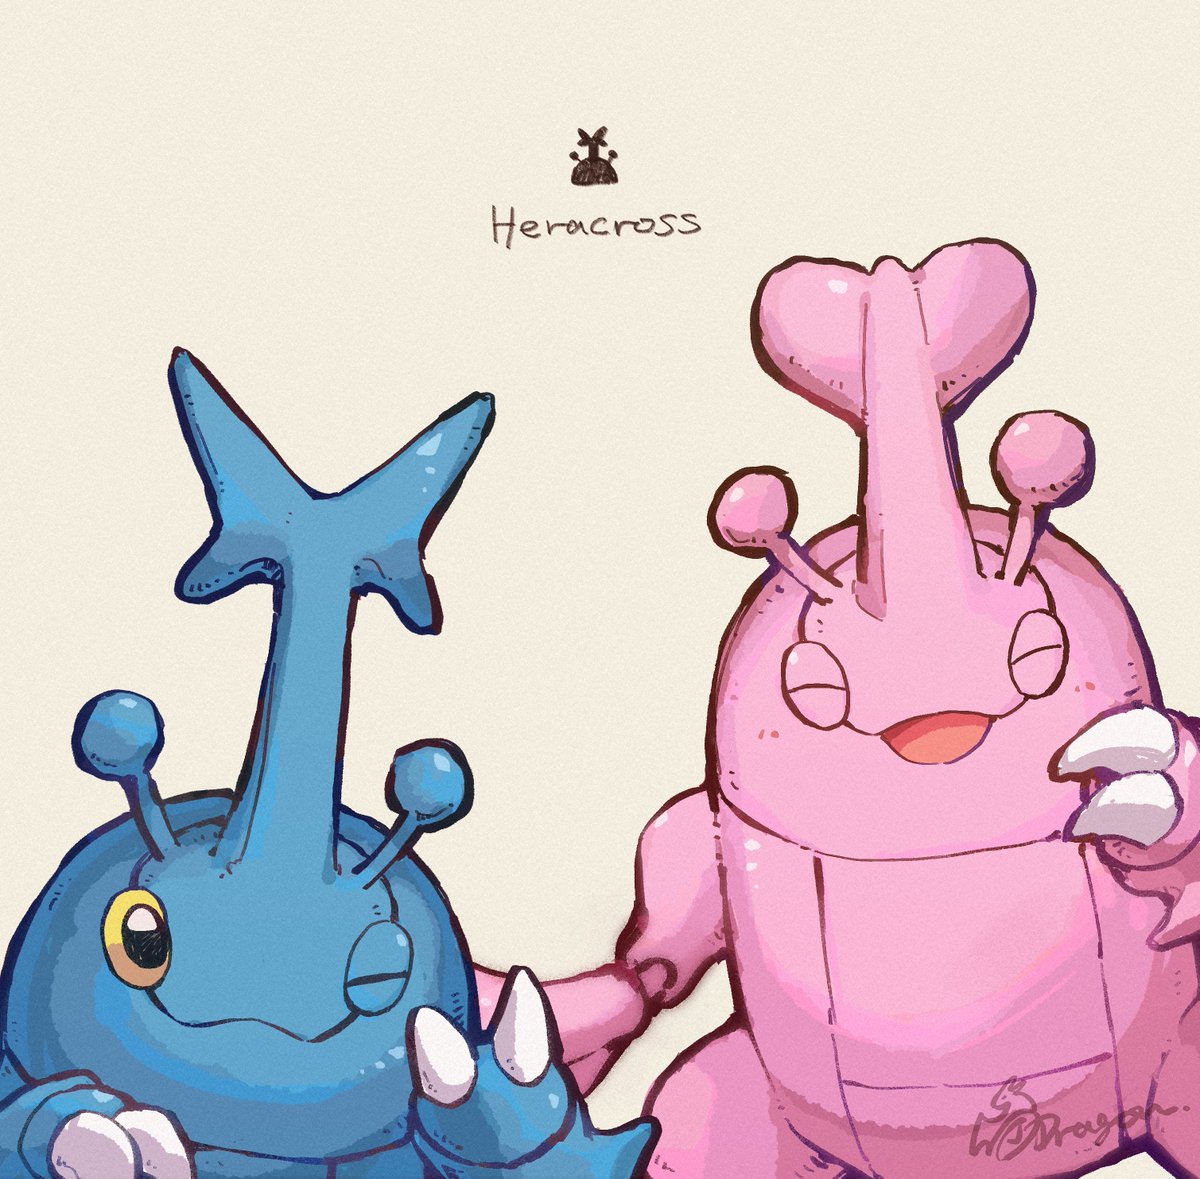 「そしてこちらはヘラクロス特集#PokemonDay 」|J-Dragon(創作･生き物)のイラスト